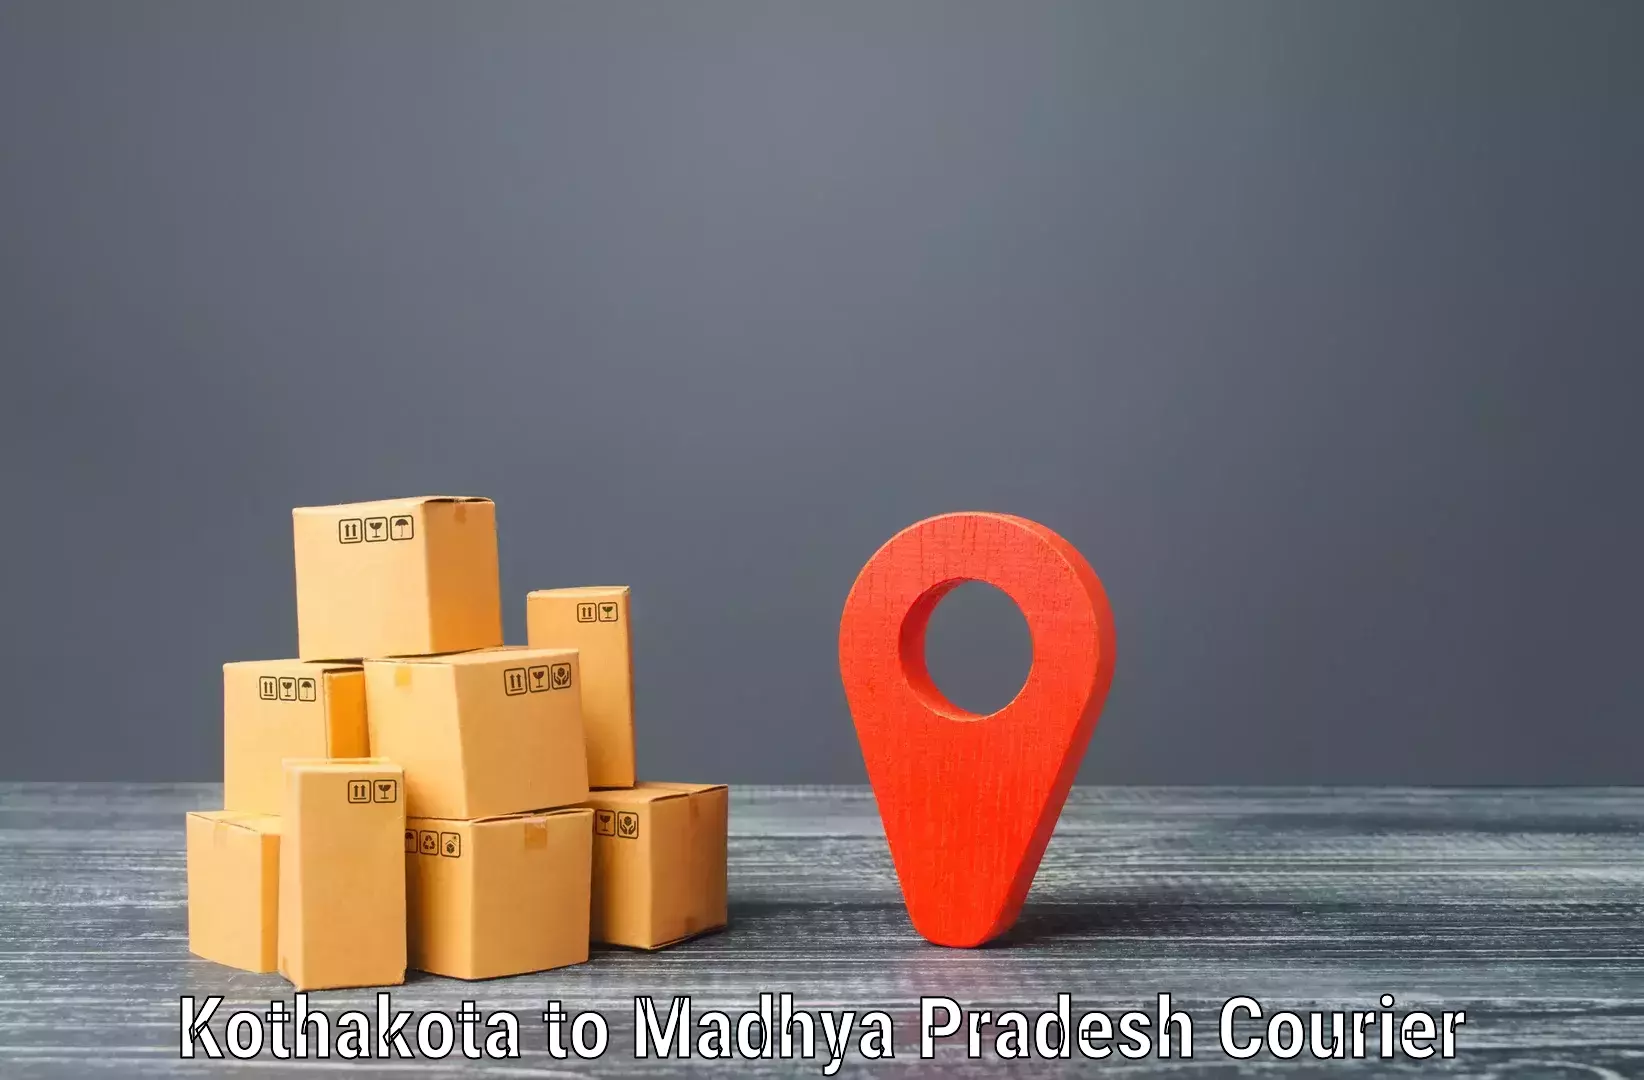 Personal courier services Kothakota to Shivpuri